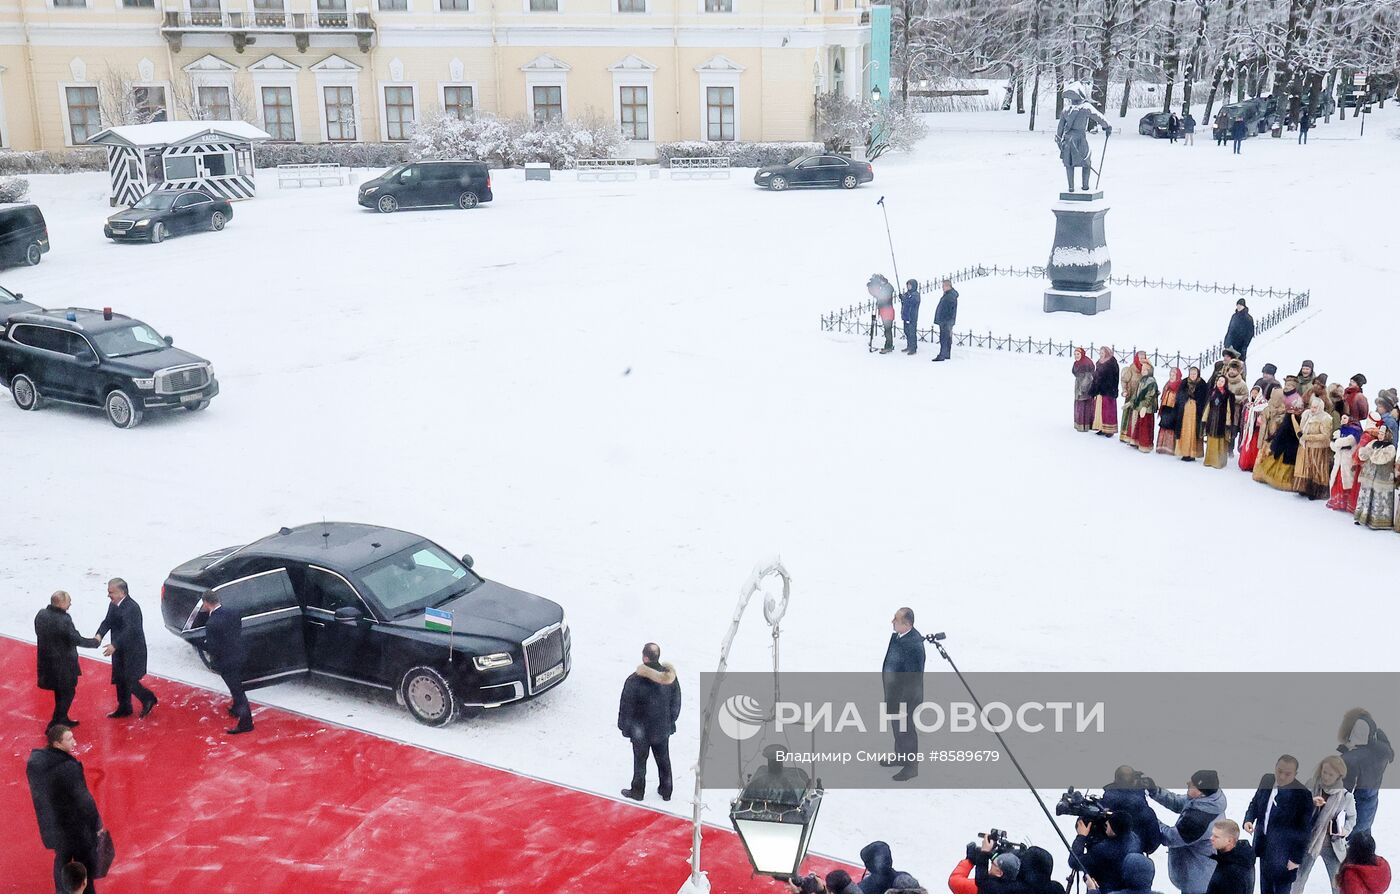 Лидеры СНГ посетили дворцы Павловска, Царского Села и Петергофа